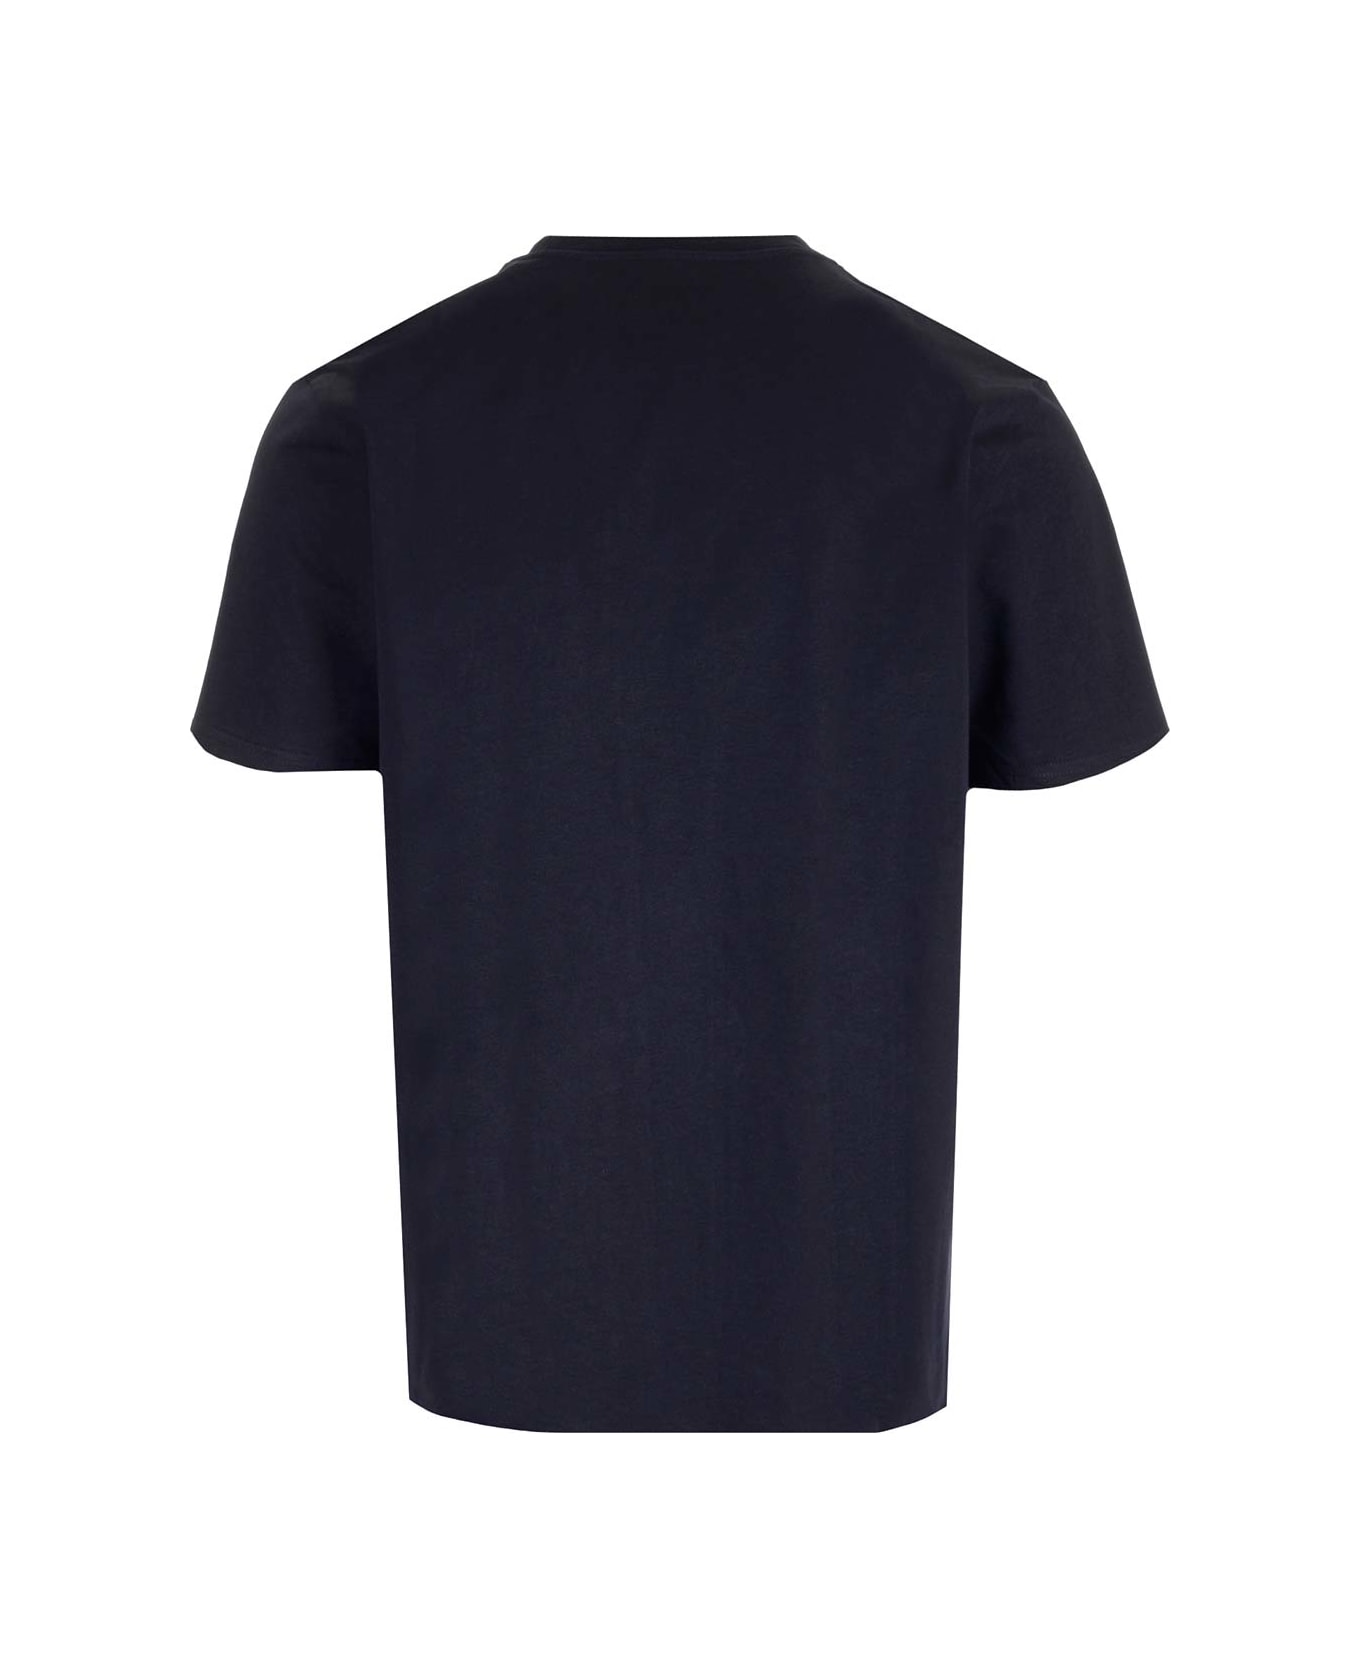 Carhartt Chest Pocket T-shirt - Blu navy